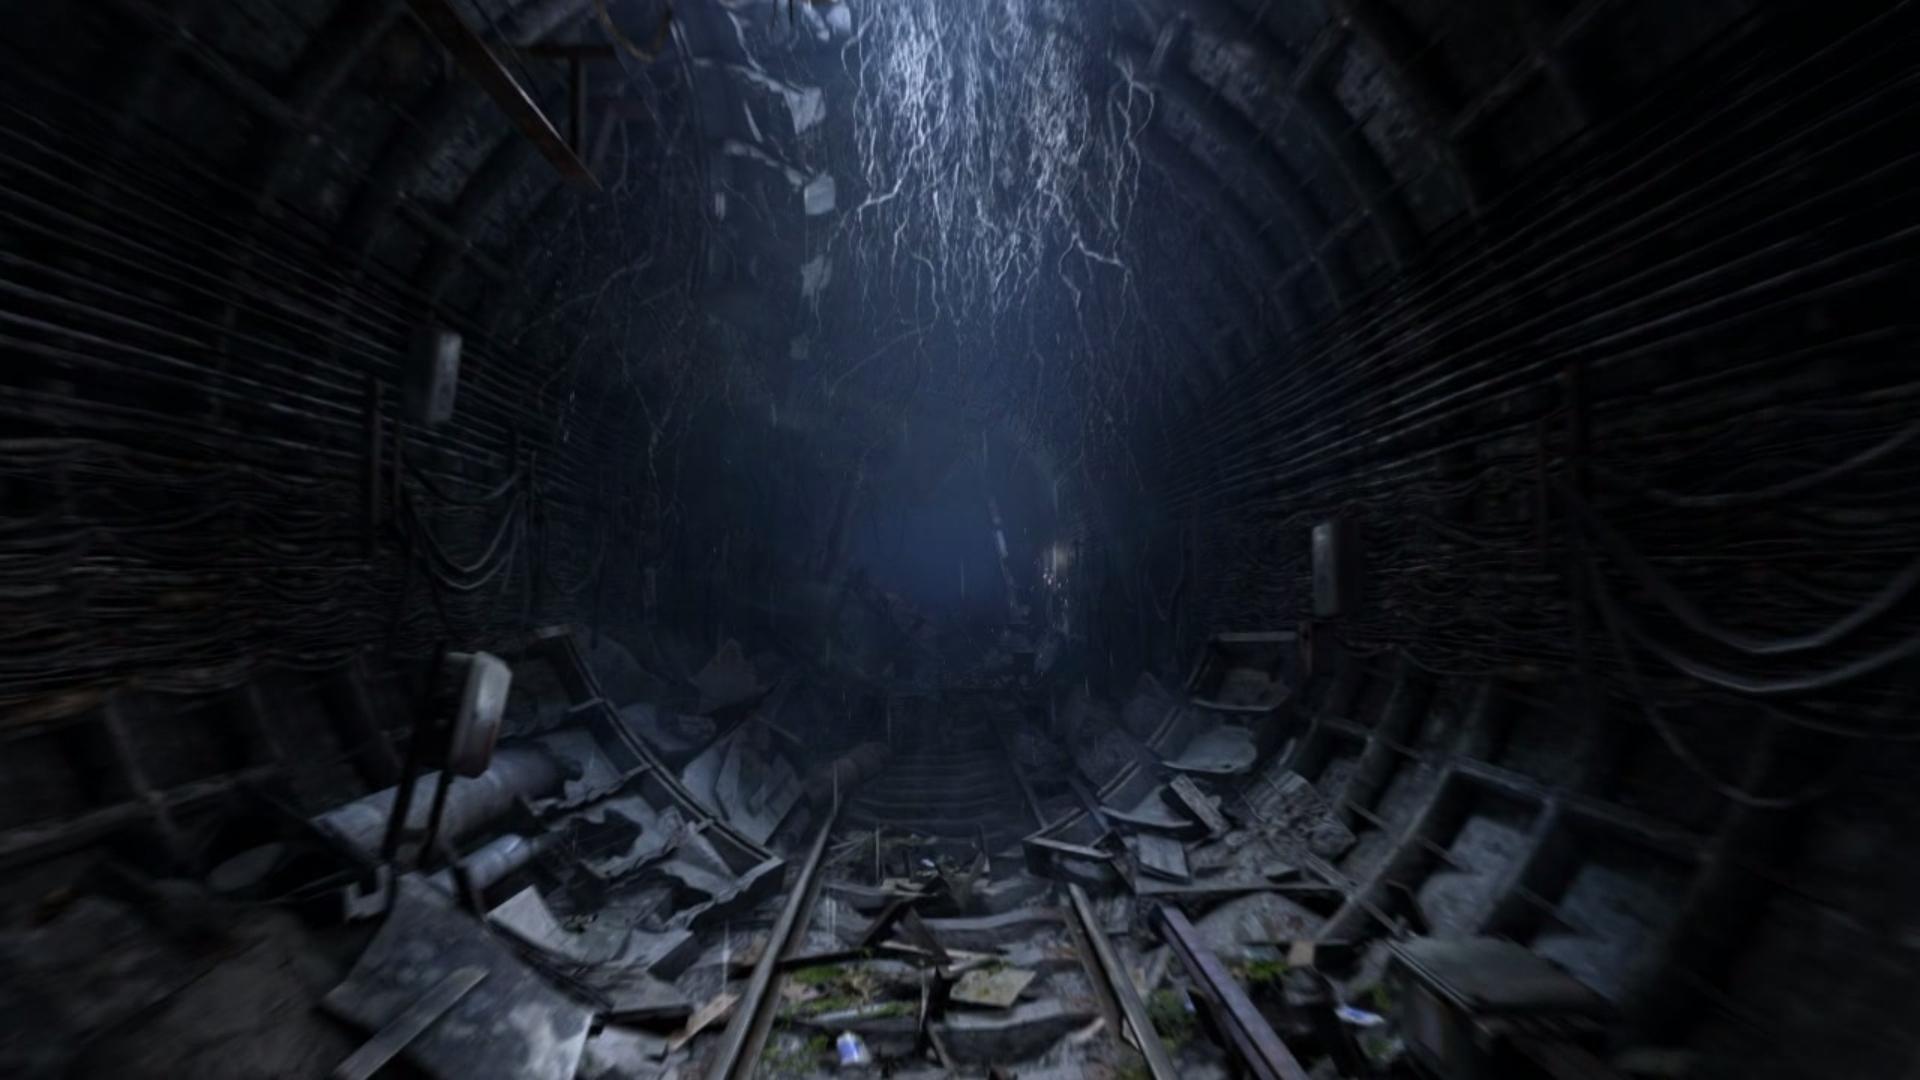 Тоннель метро 2033